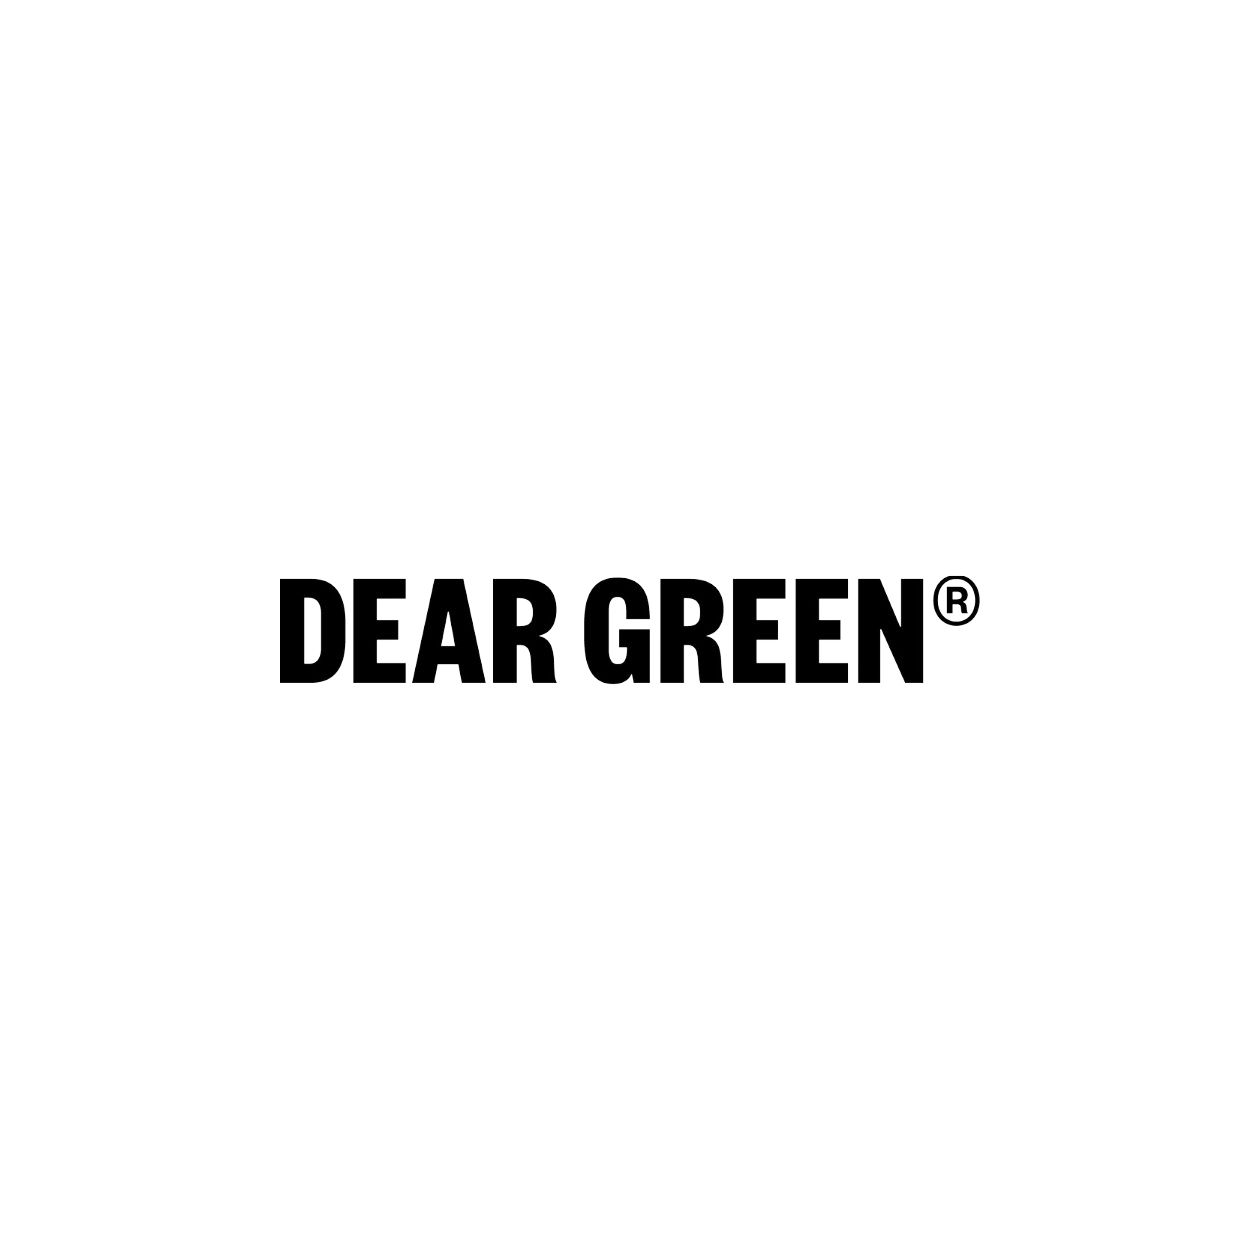 Dear Green